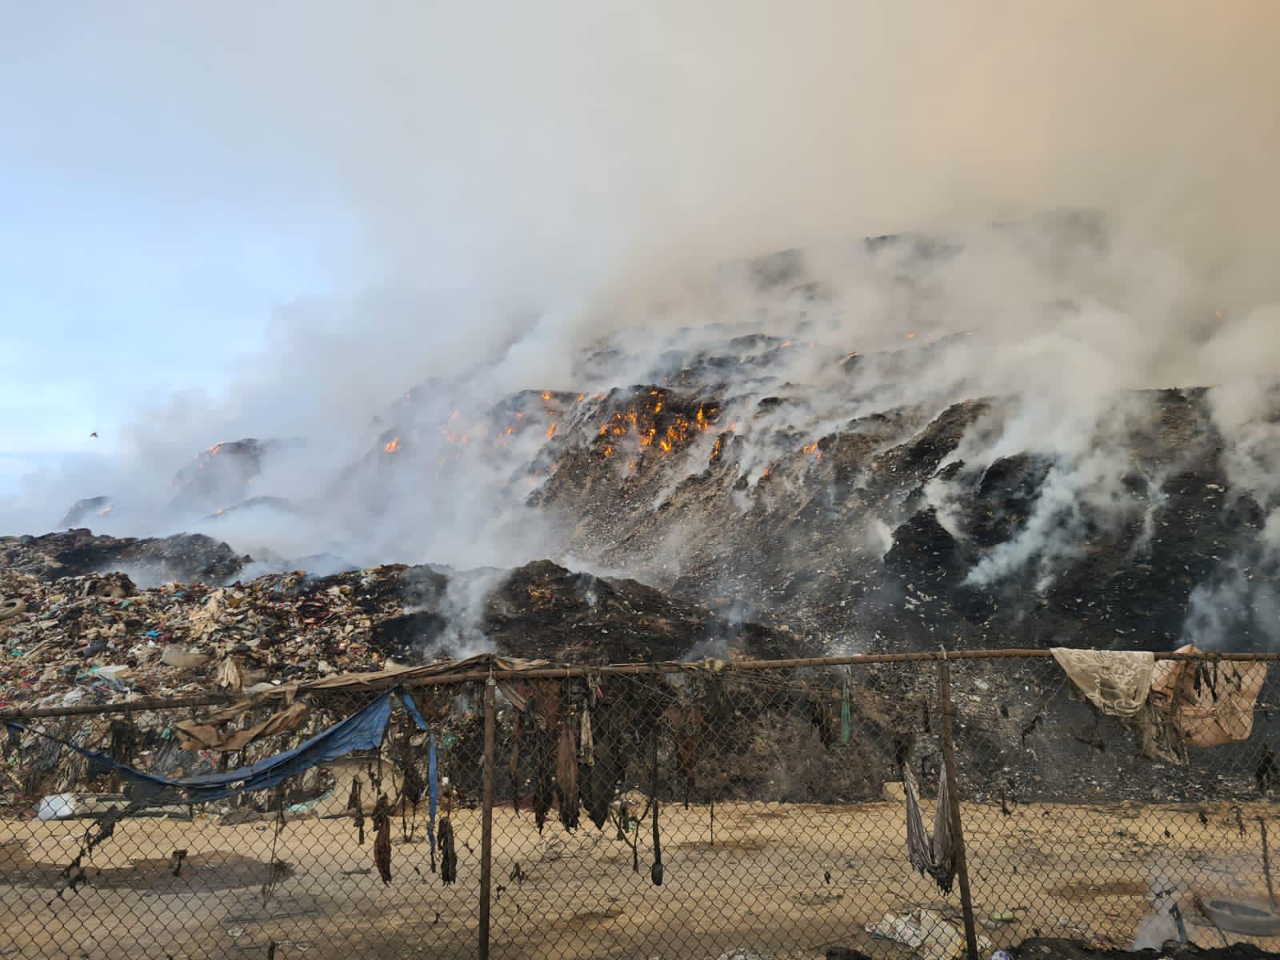 Labores para apagar el incendio en Chimalhuacán se extienden más de 12 horas